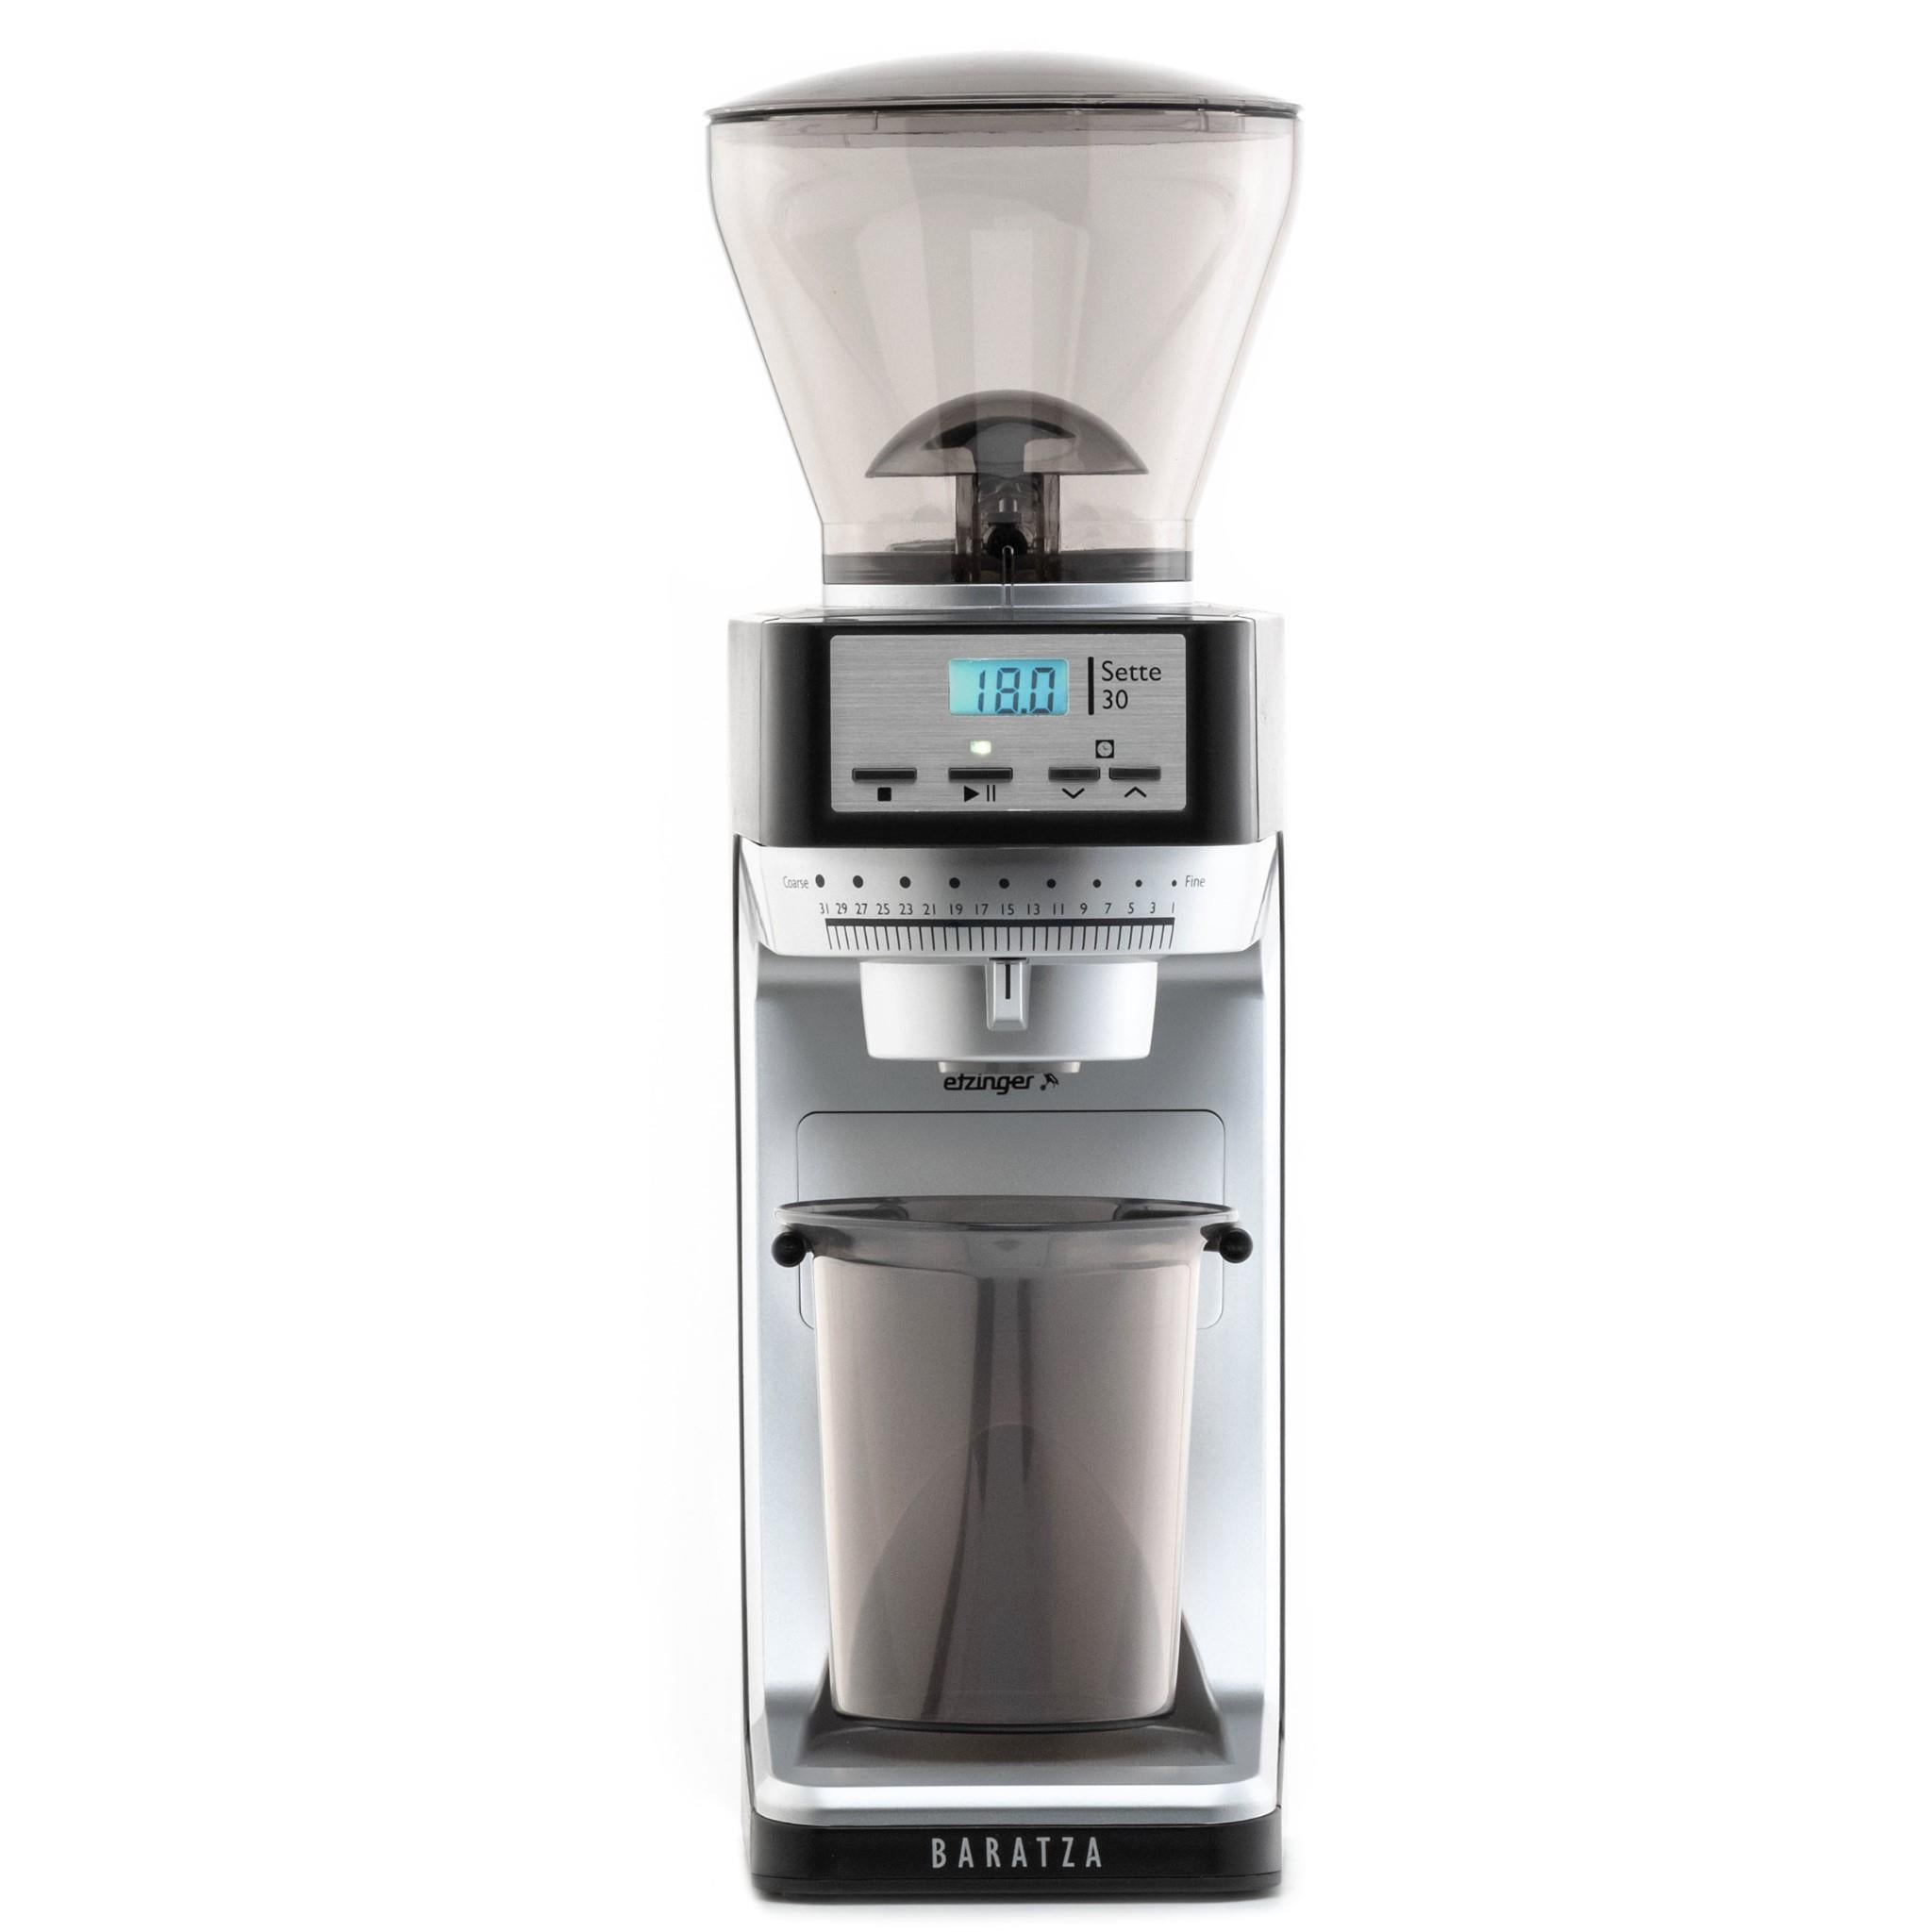 baratza sette 30 230v coffee grinder